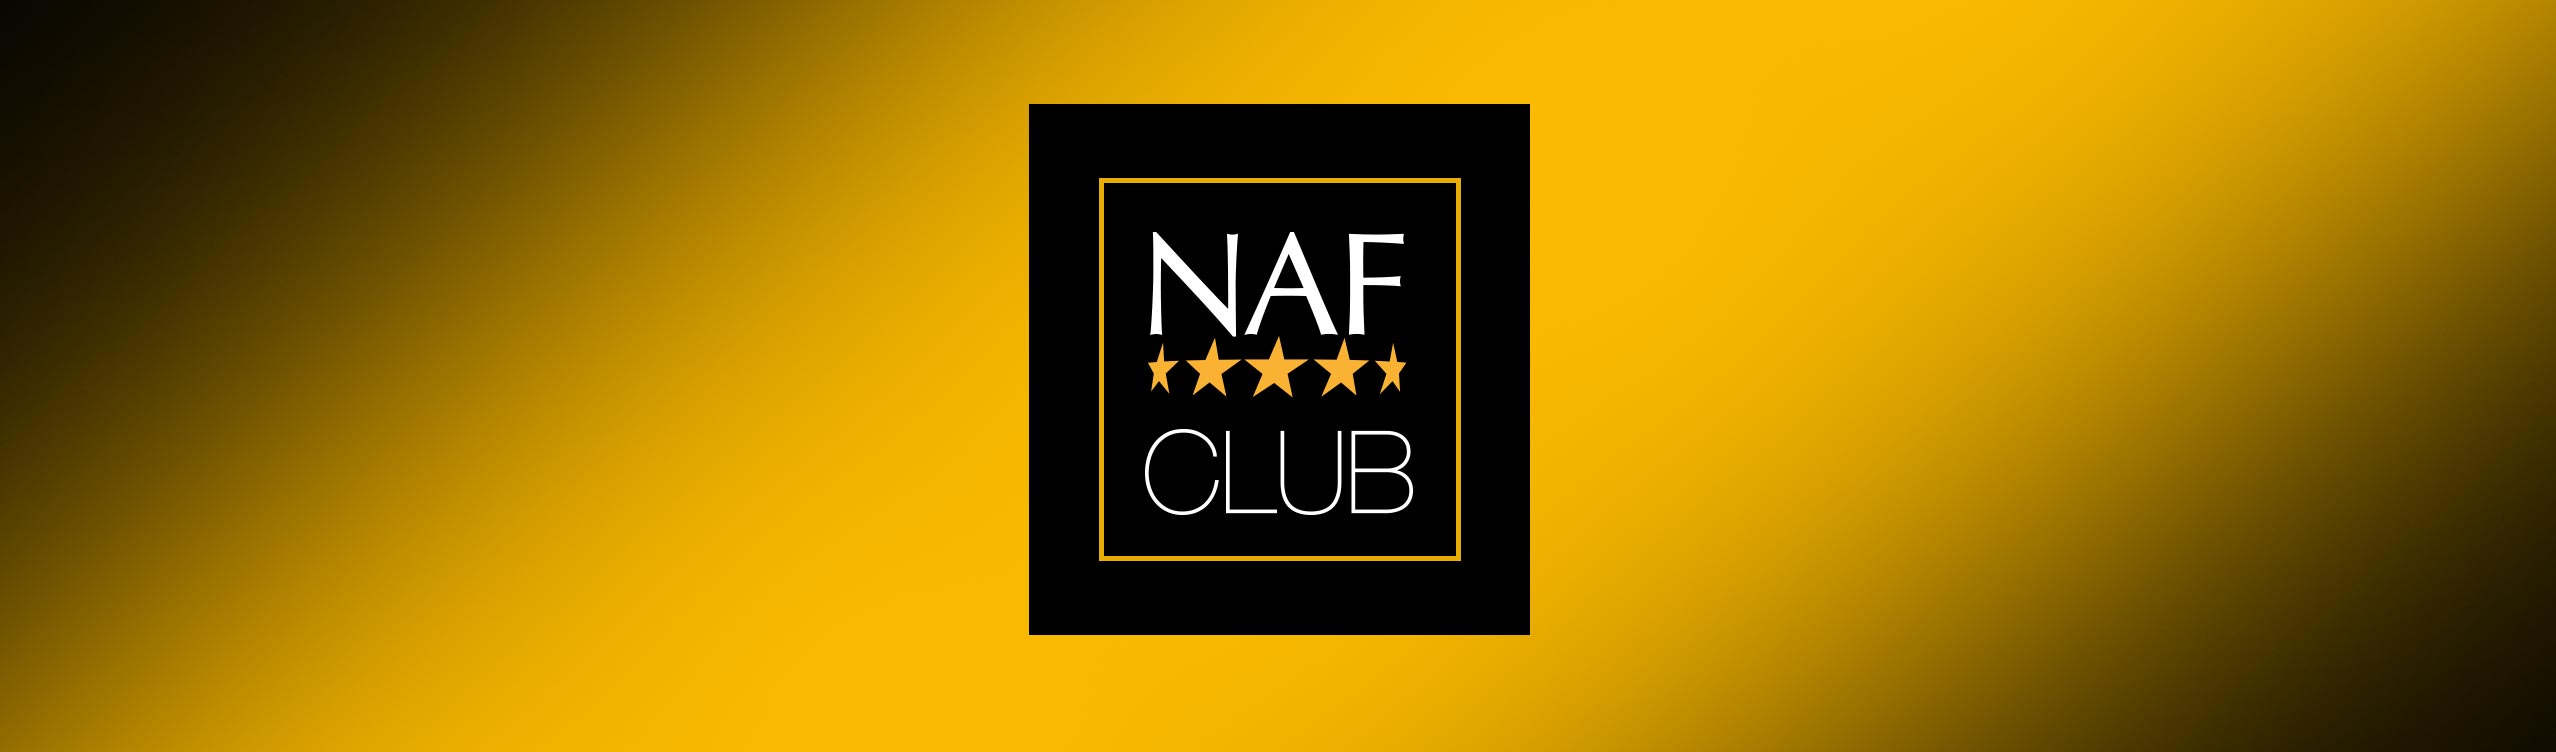 NAF Five Star Club